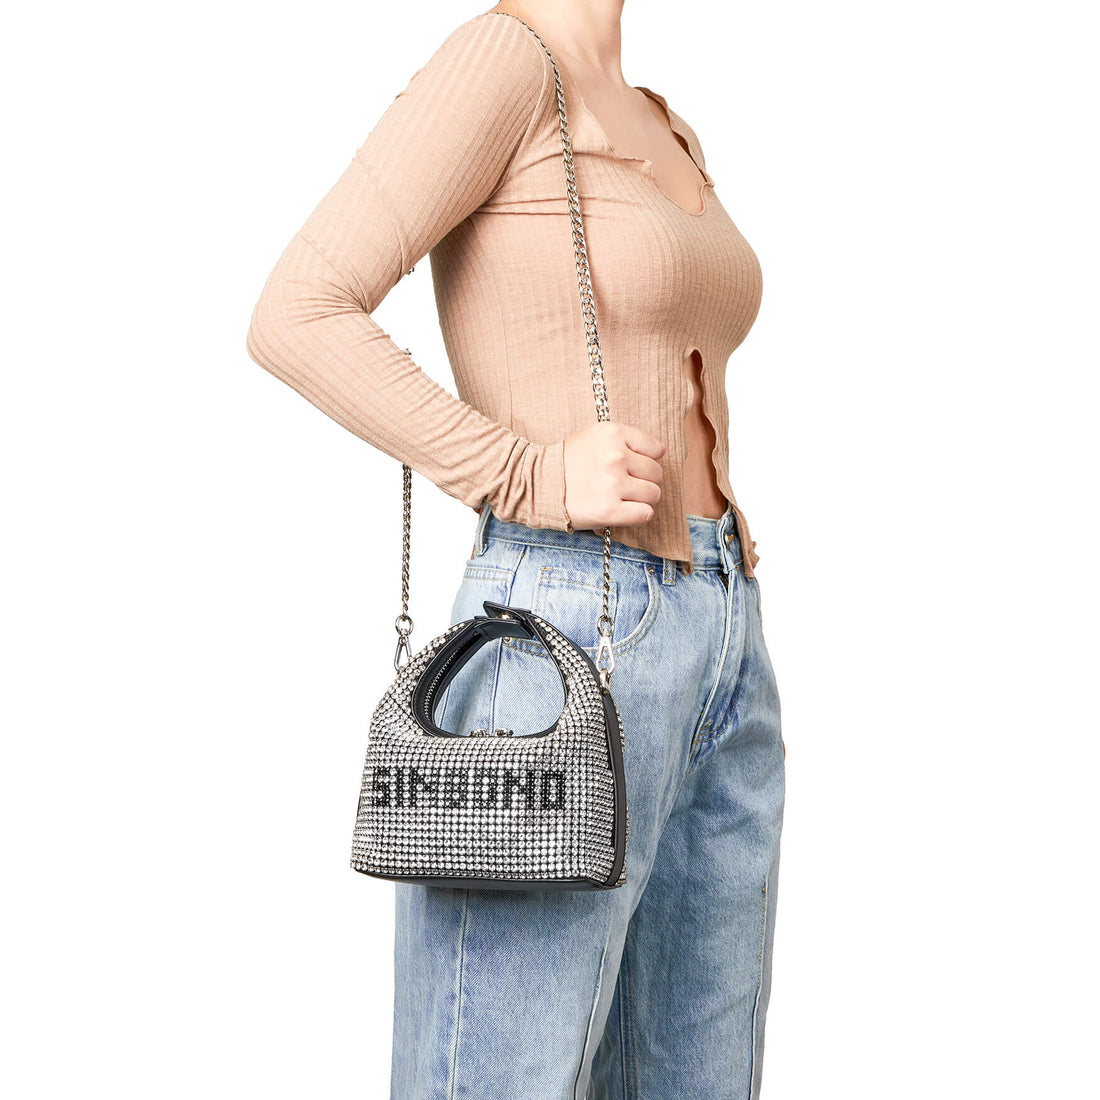 SINBONO Rhinstone Leather Purse, Rhinestone Crossbody Bags for Women